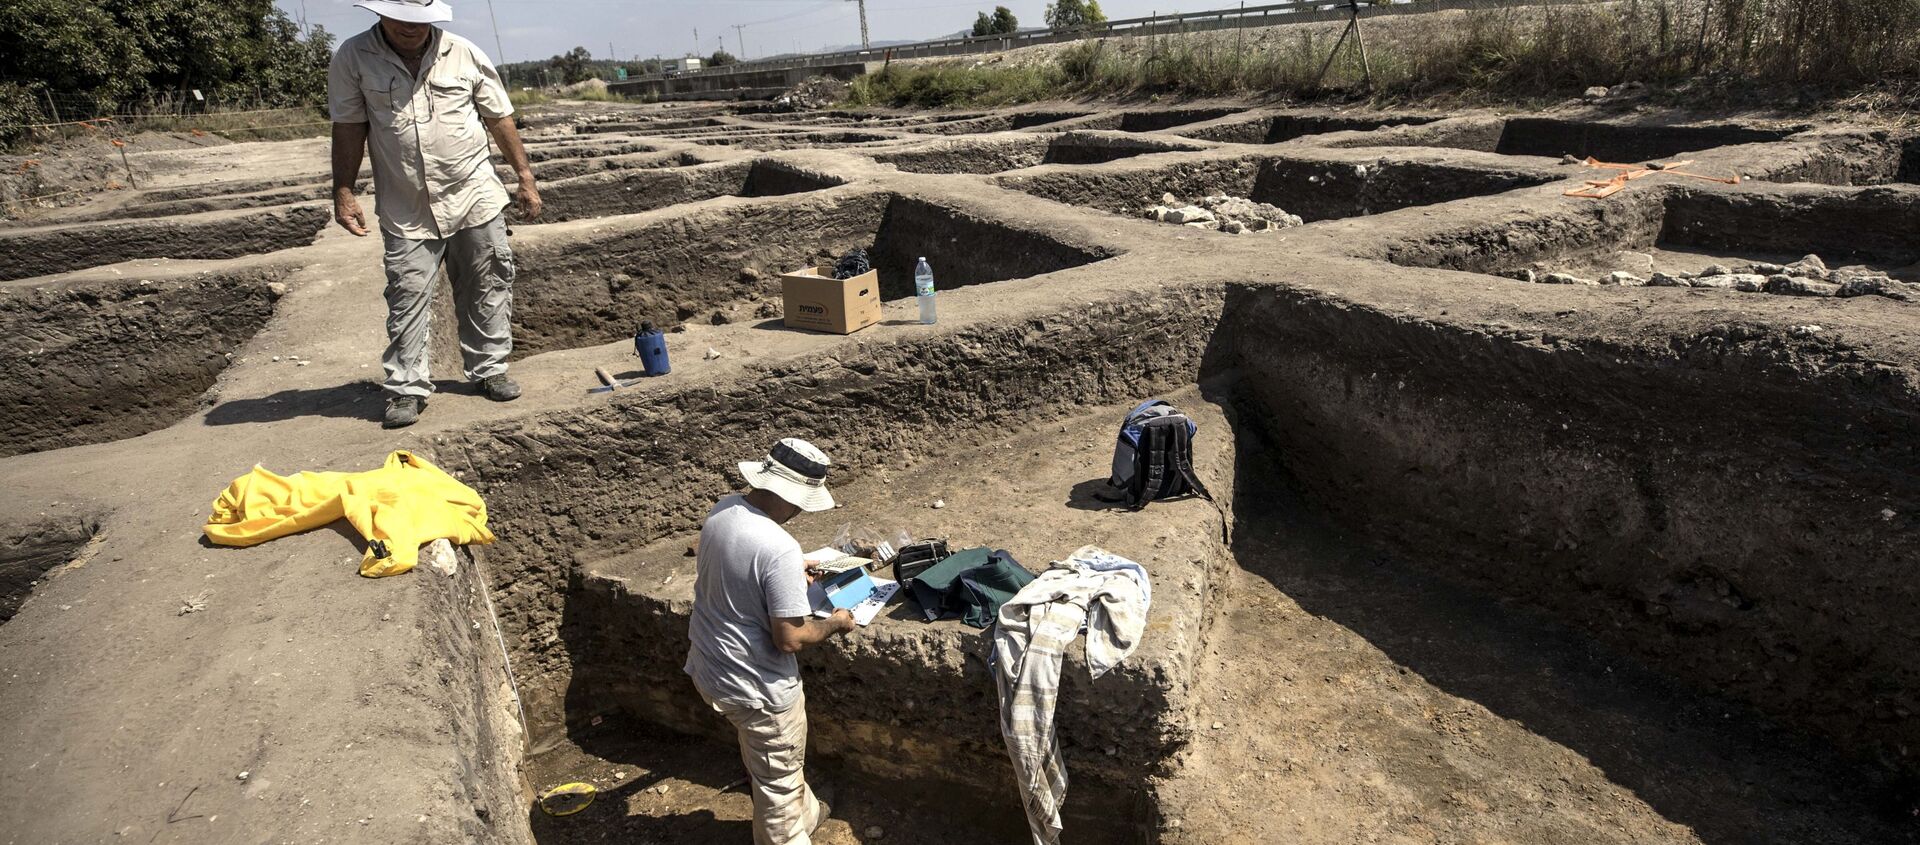 Ciudad de 5.000 años de antigüedad hallada en Israel - Sputnik Mundo, 1920, 06.10.2019